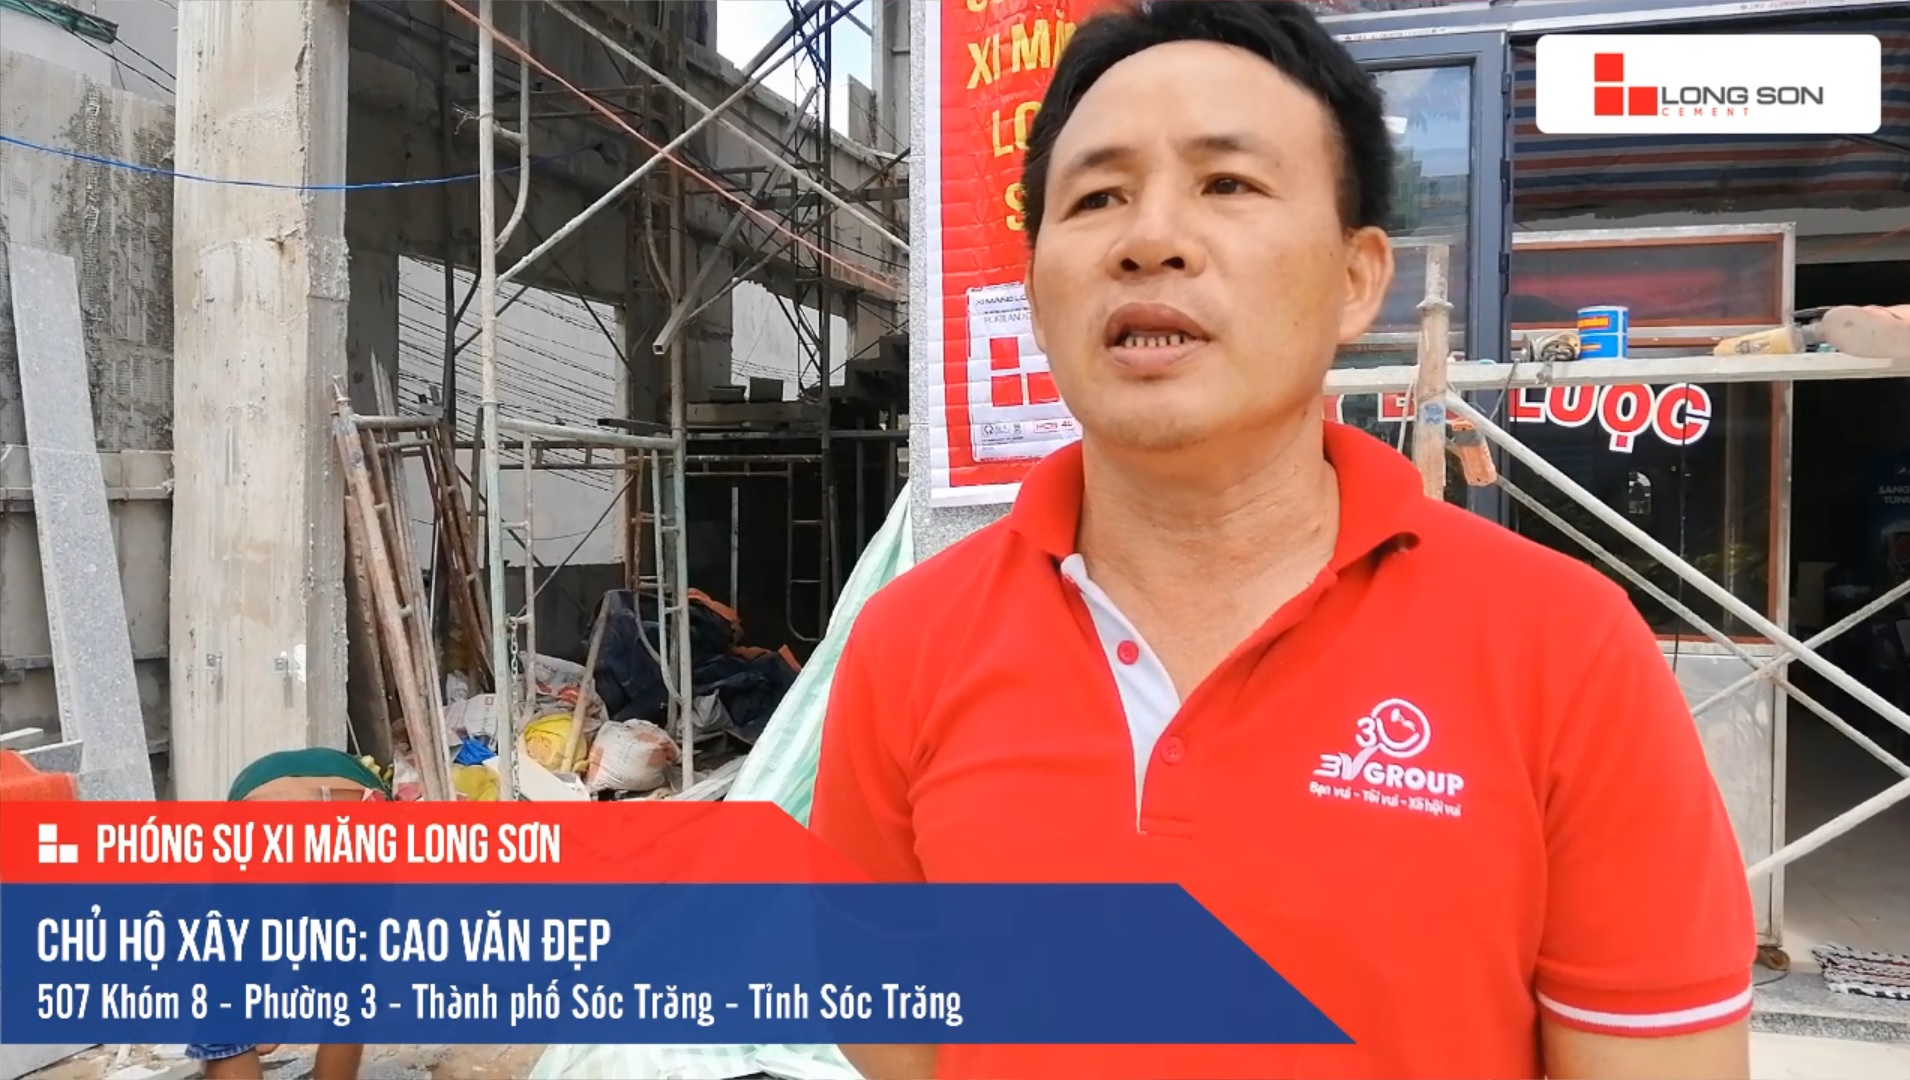 Phóng sự công trình sử dụng Xi măng Long Sơn tại Sóc Trăng 20.06.2019